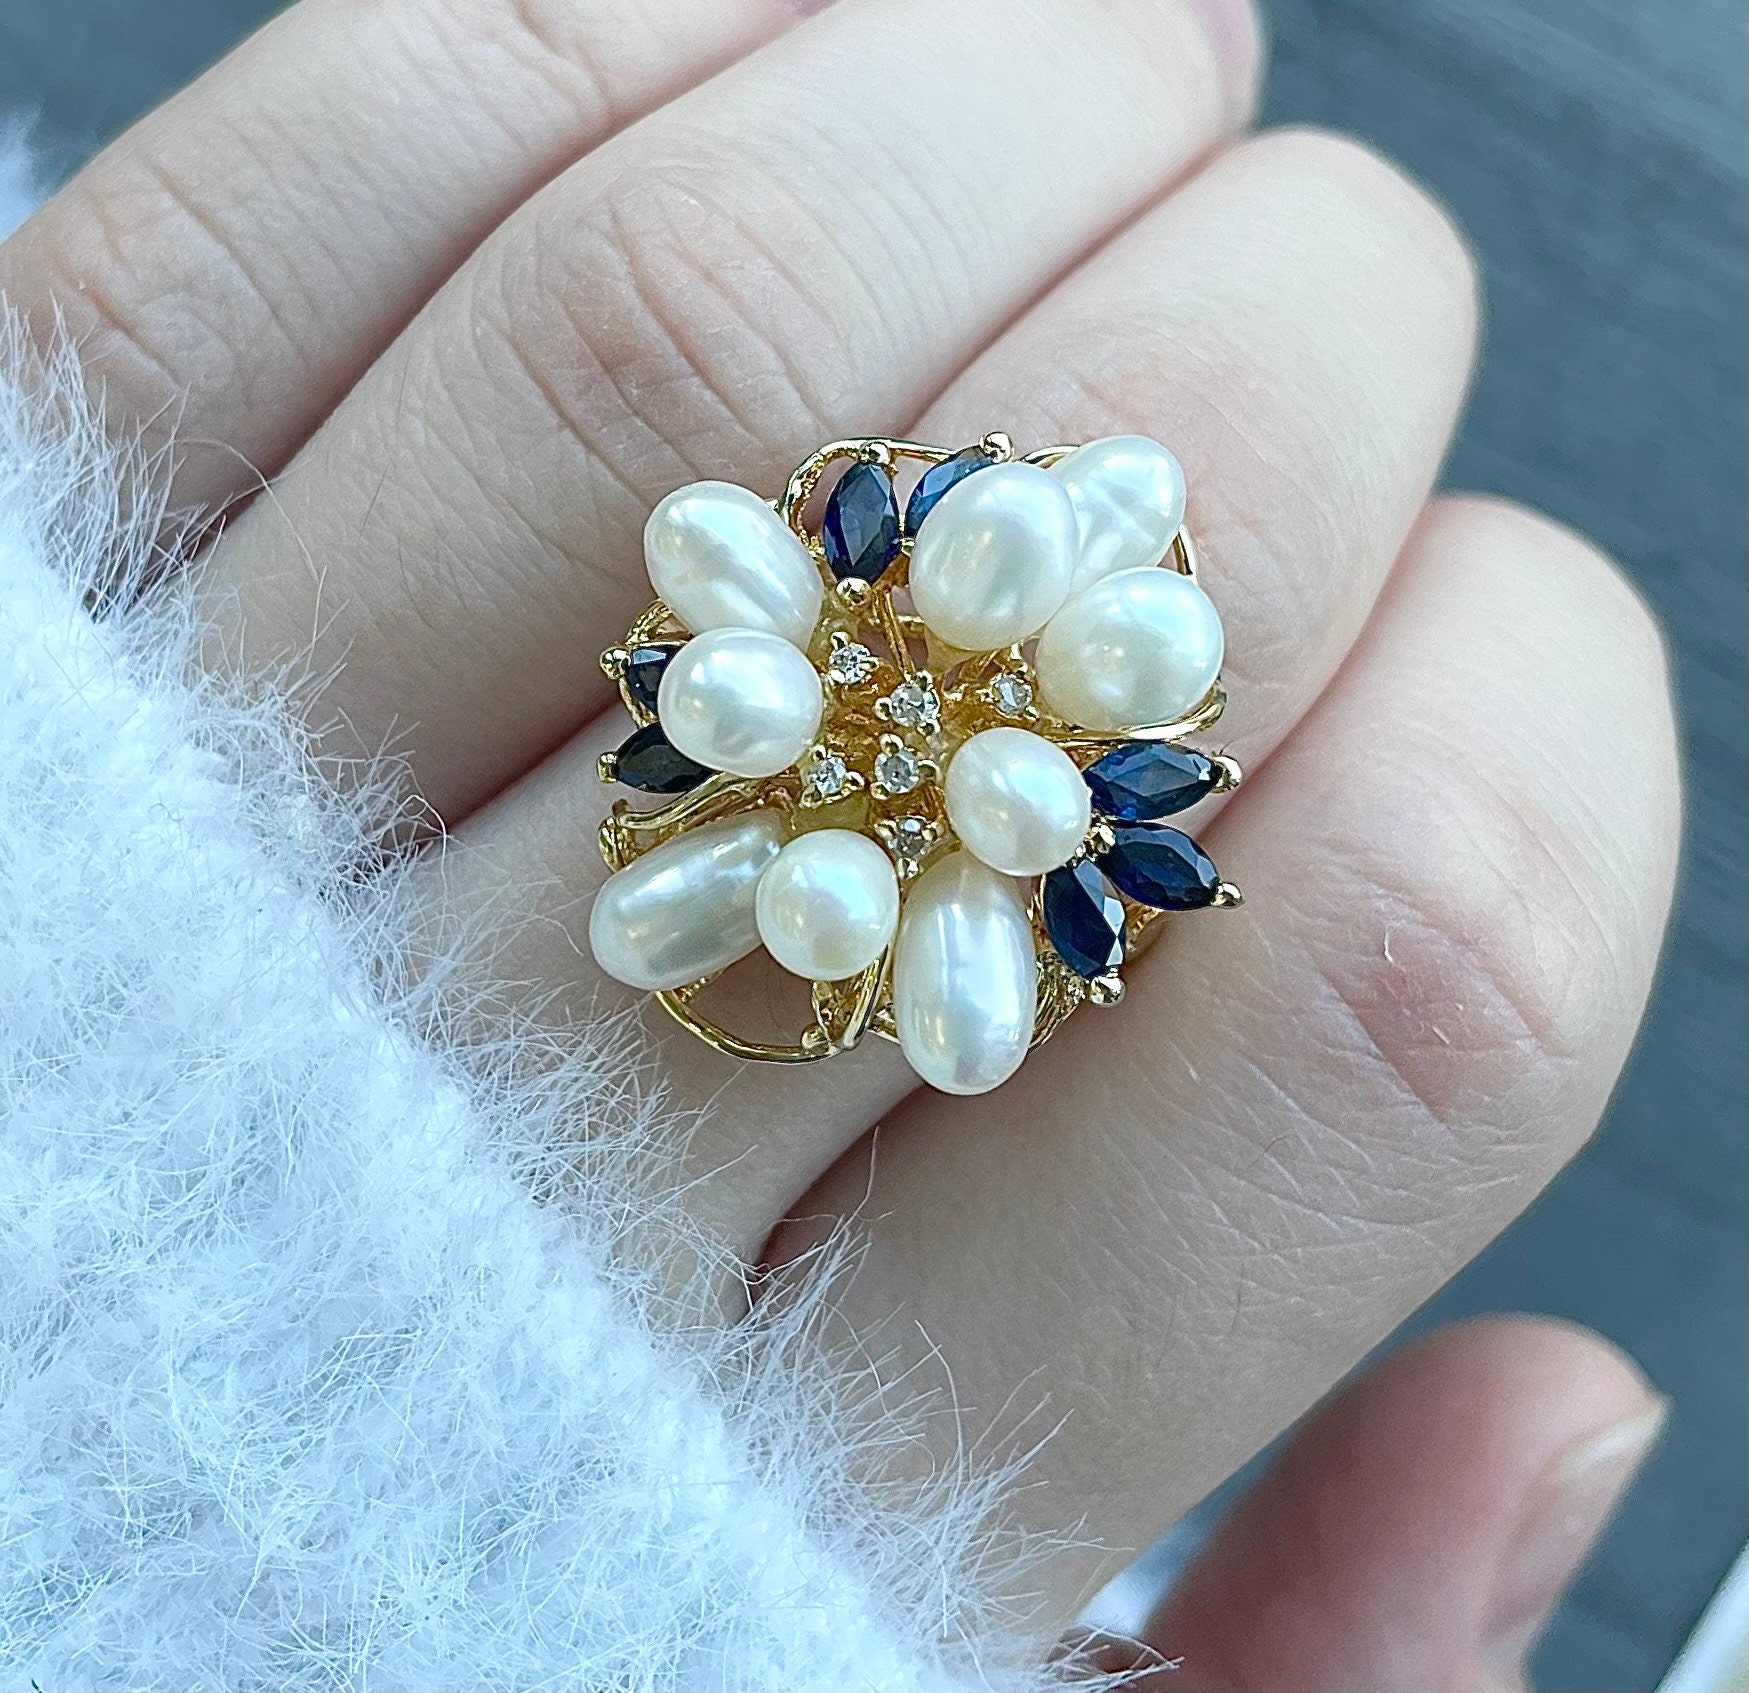 statement | 14K Gelbgold Ring Blume Mit Saphiren, Perlen Und Diamanten von DazzleJewelryGoods